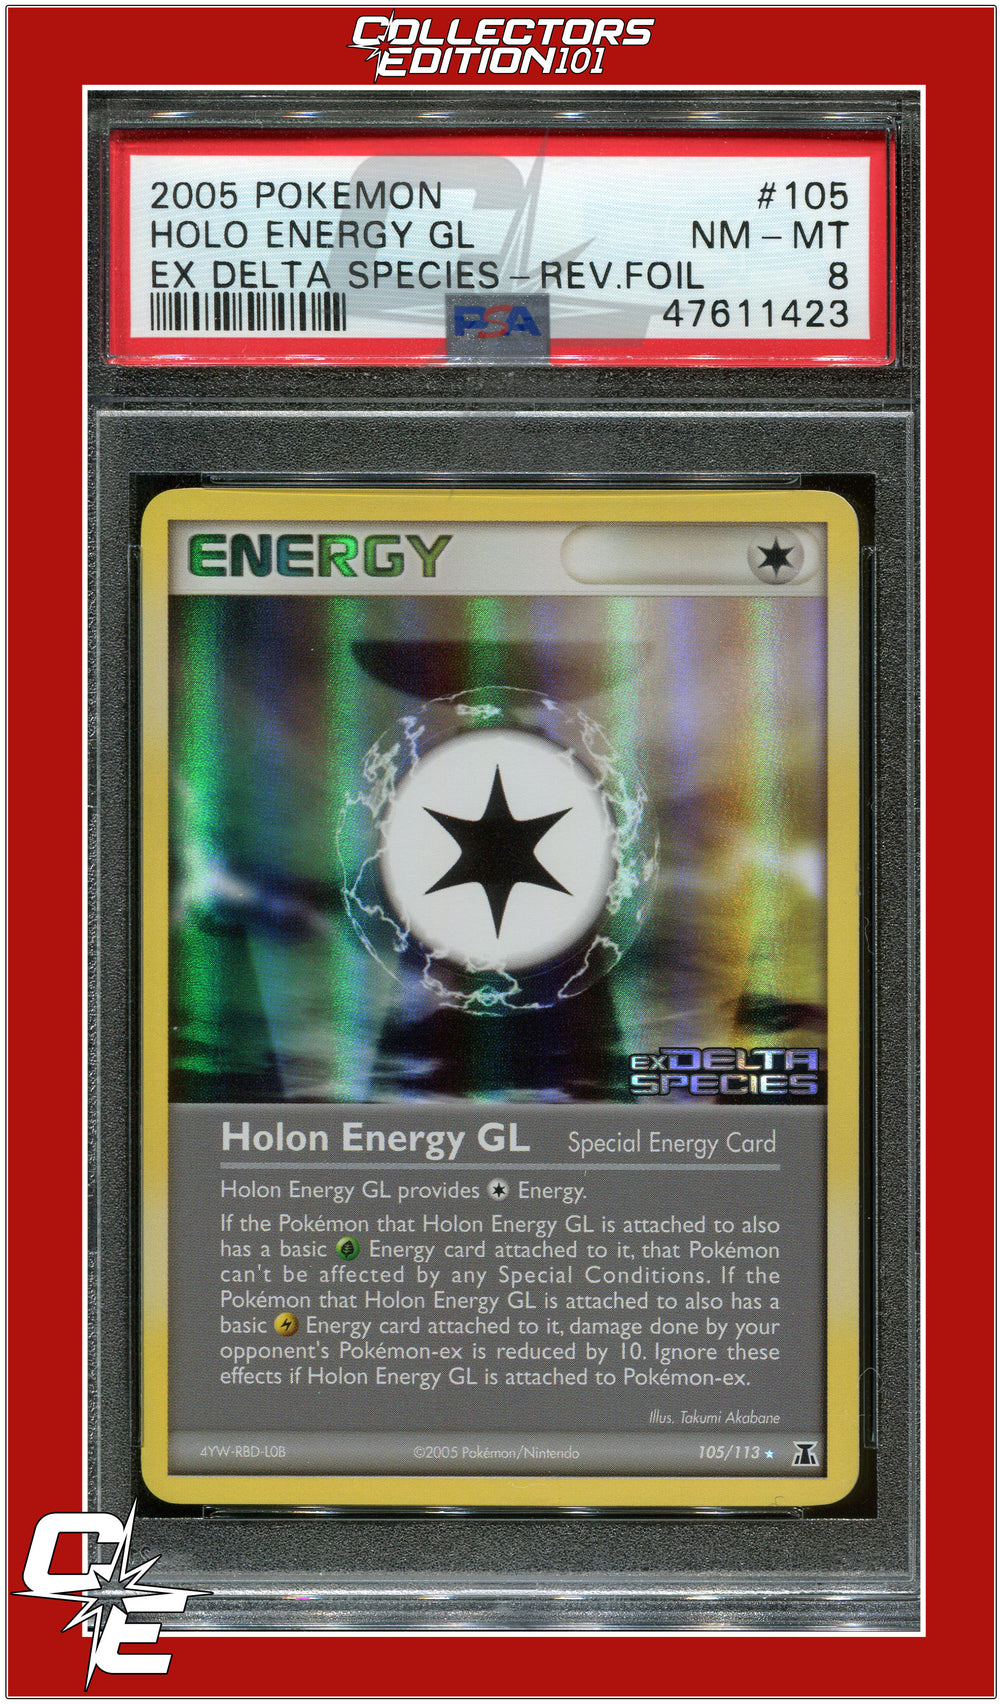 EX Delta Species 105 Holo Energy GL Reverse Foil PSA 8